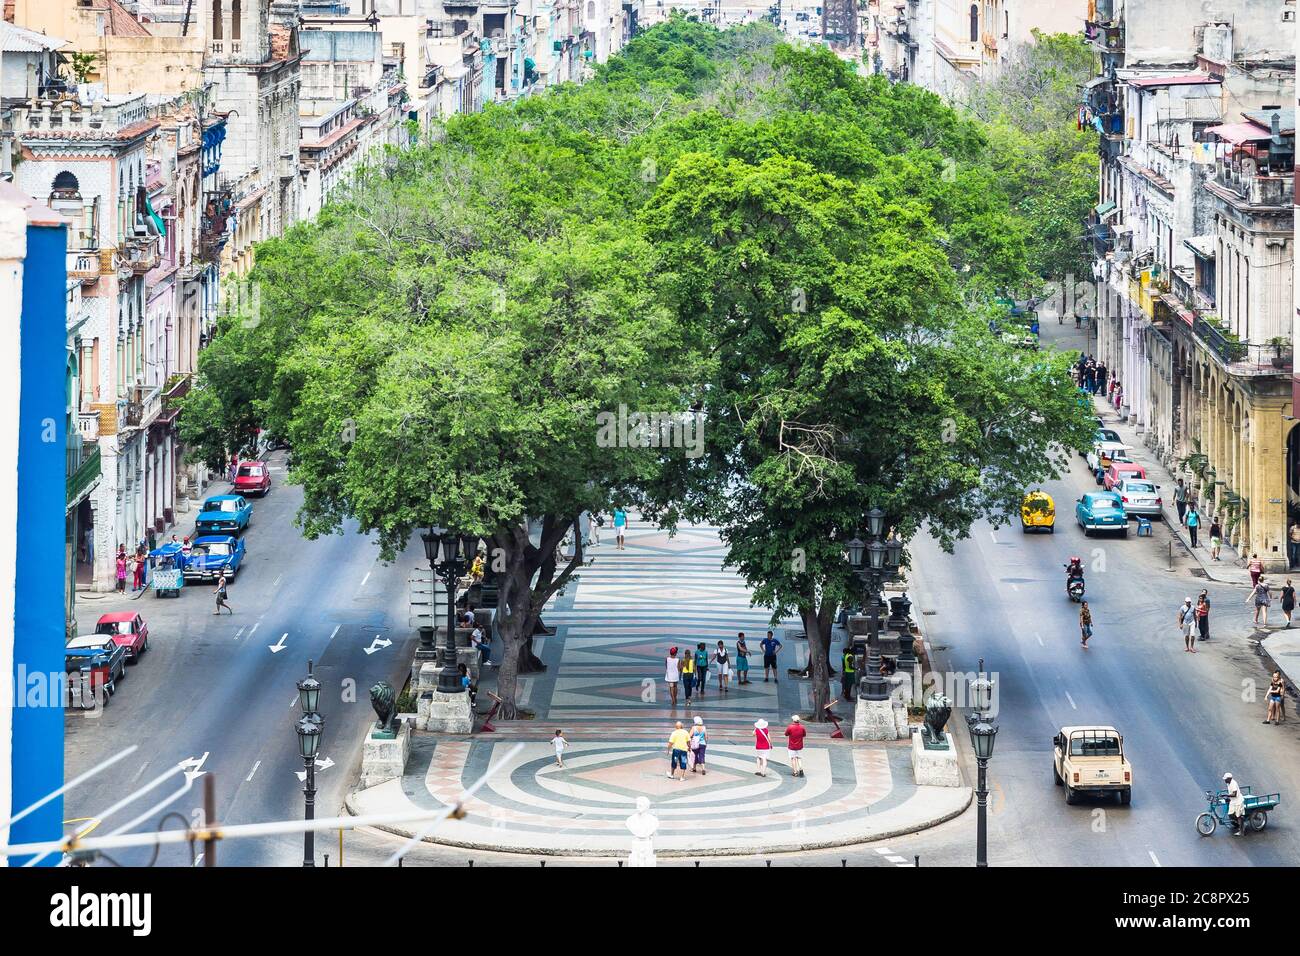 L'Avana / Cuba - 04.15.2015: Il Parco Centrale (Parque centrale) con alberi su entrambi i lati, sparato dall'alto Foto Stock